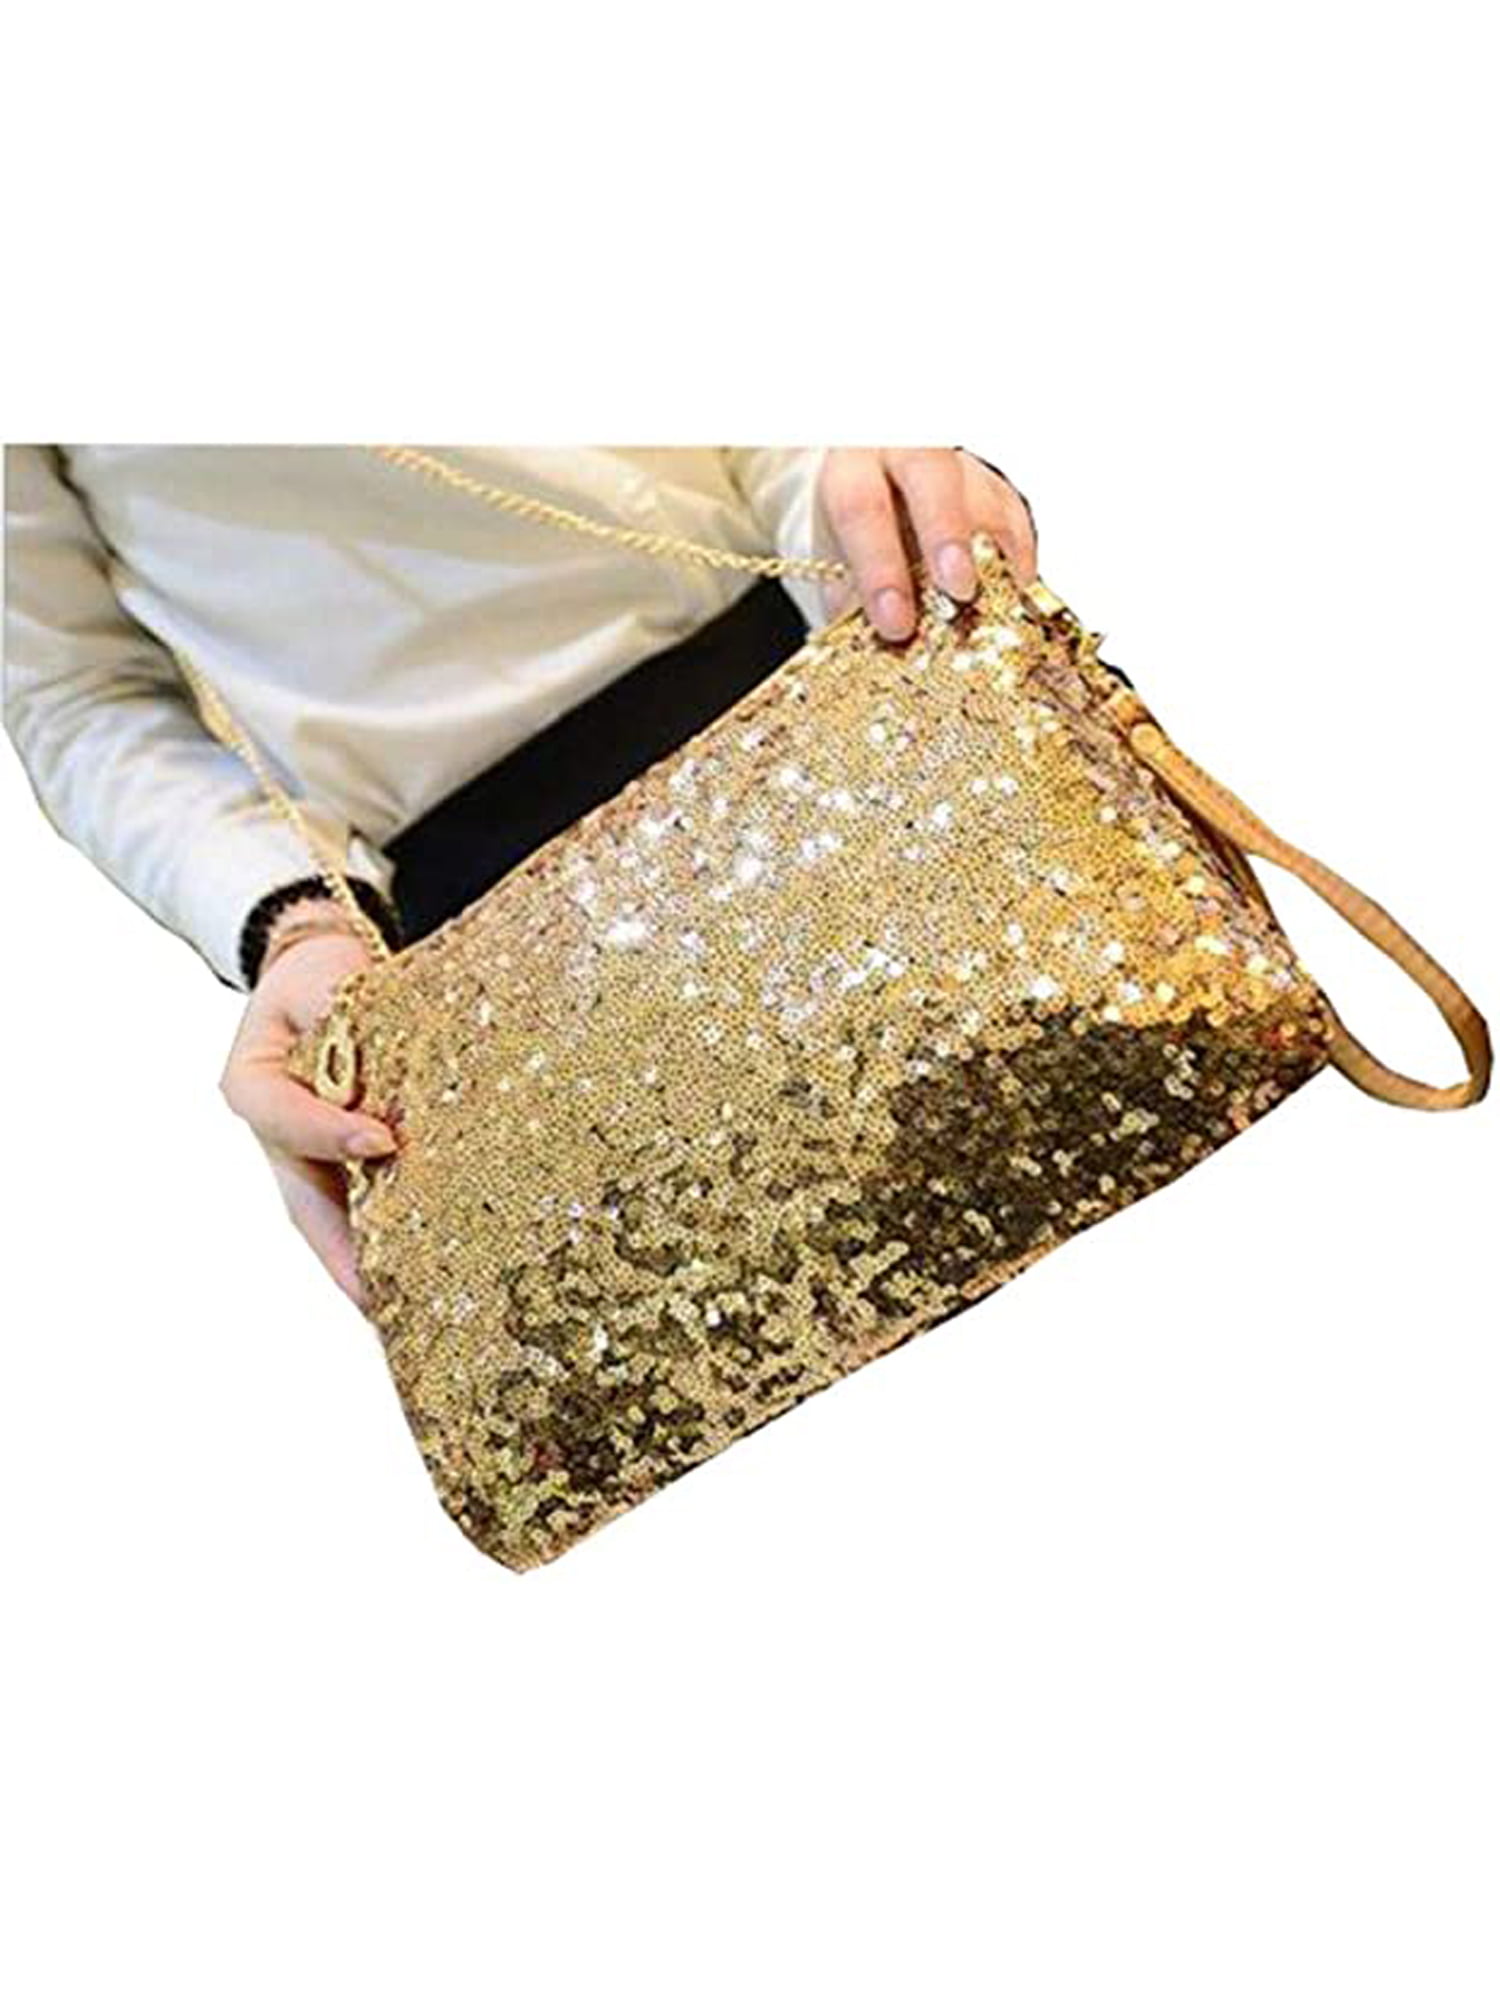 Glitter Envelope Clutch Bag Flap Topped Metal Bar Shoulder Purse Handbag 